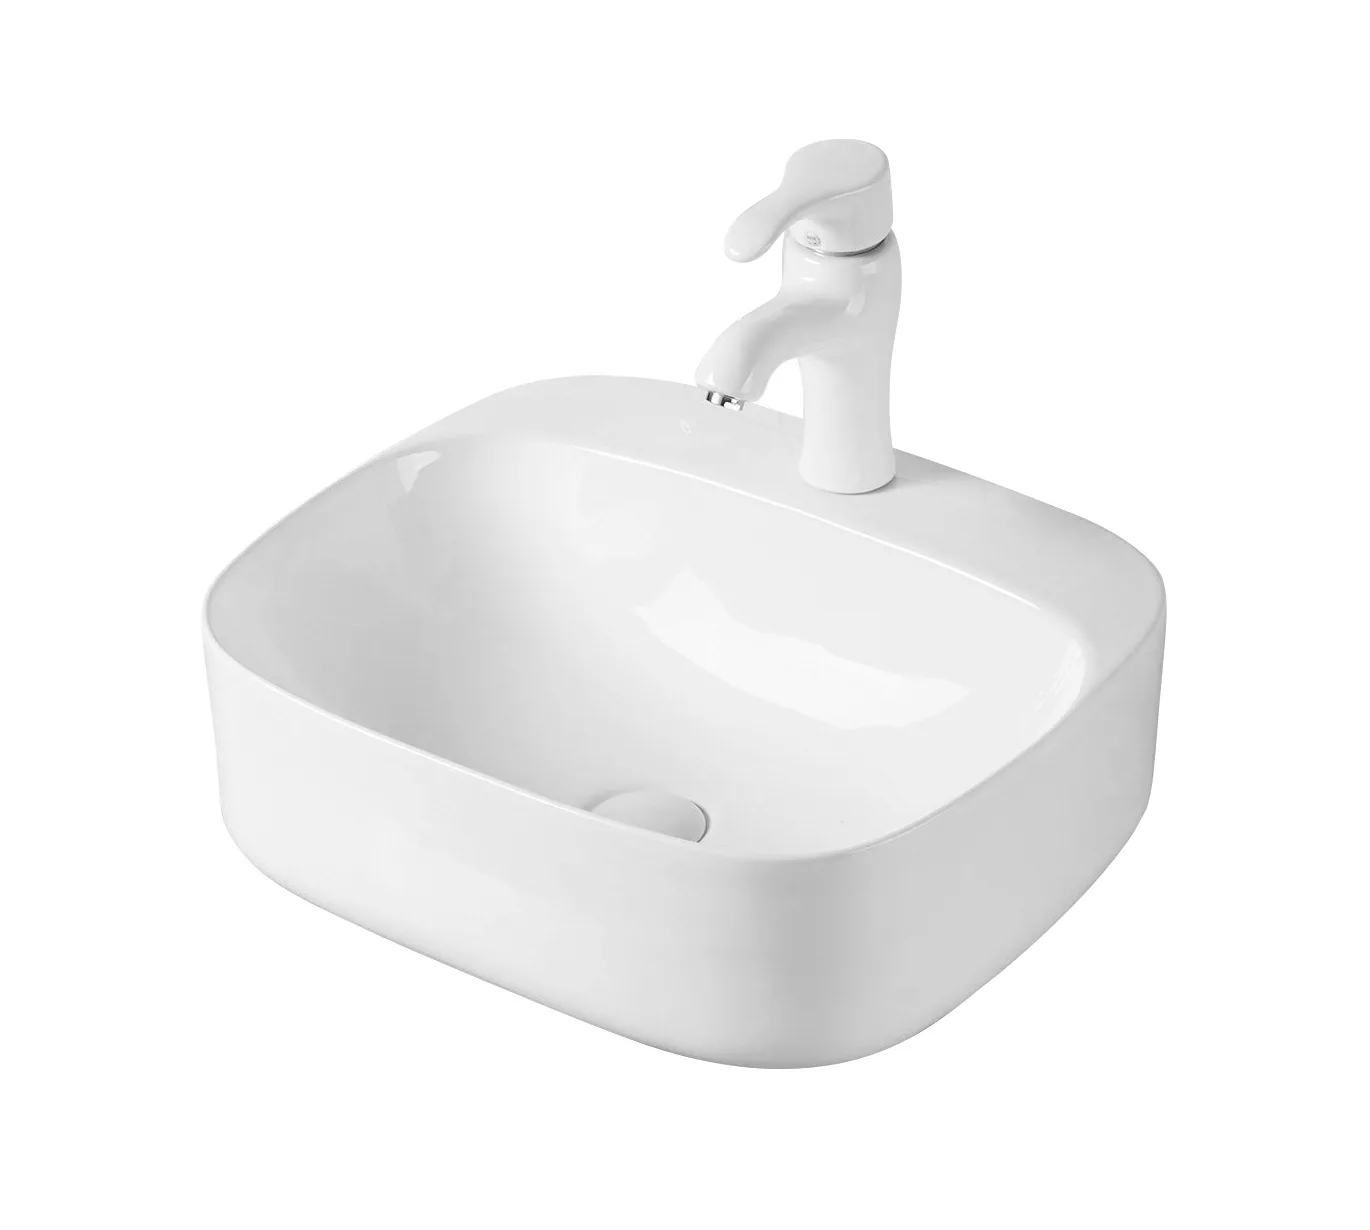 Накладная белая раковина для ванной GiD N9284 квадратная керамическая раковина накладная на столешницу bau mini квадратная 24х24 белая выпуск клик клак белый